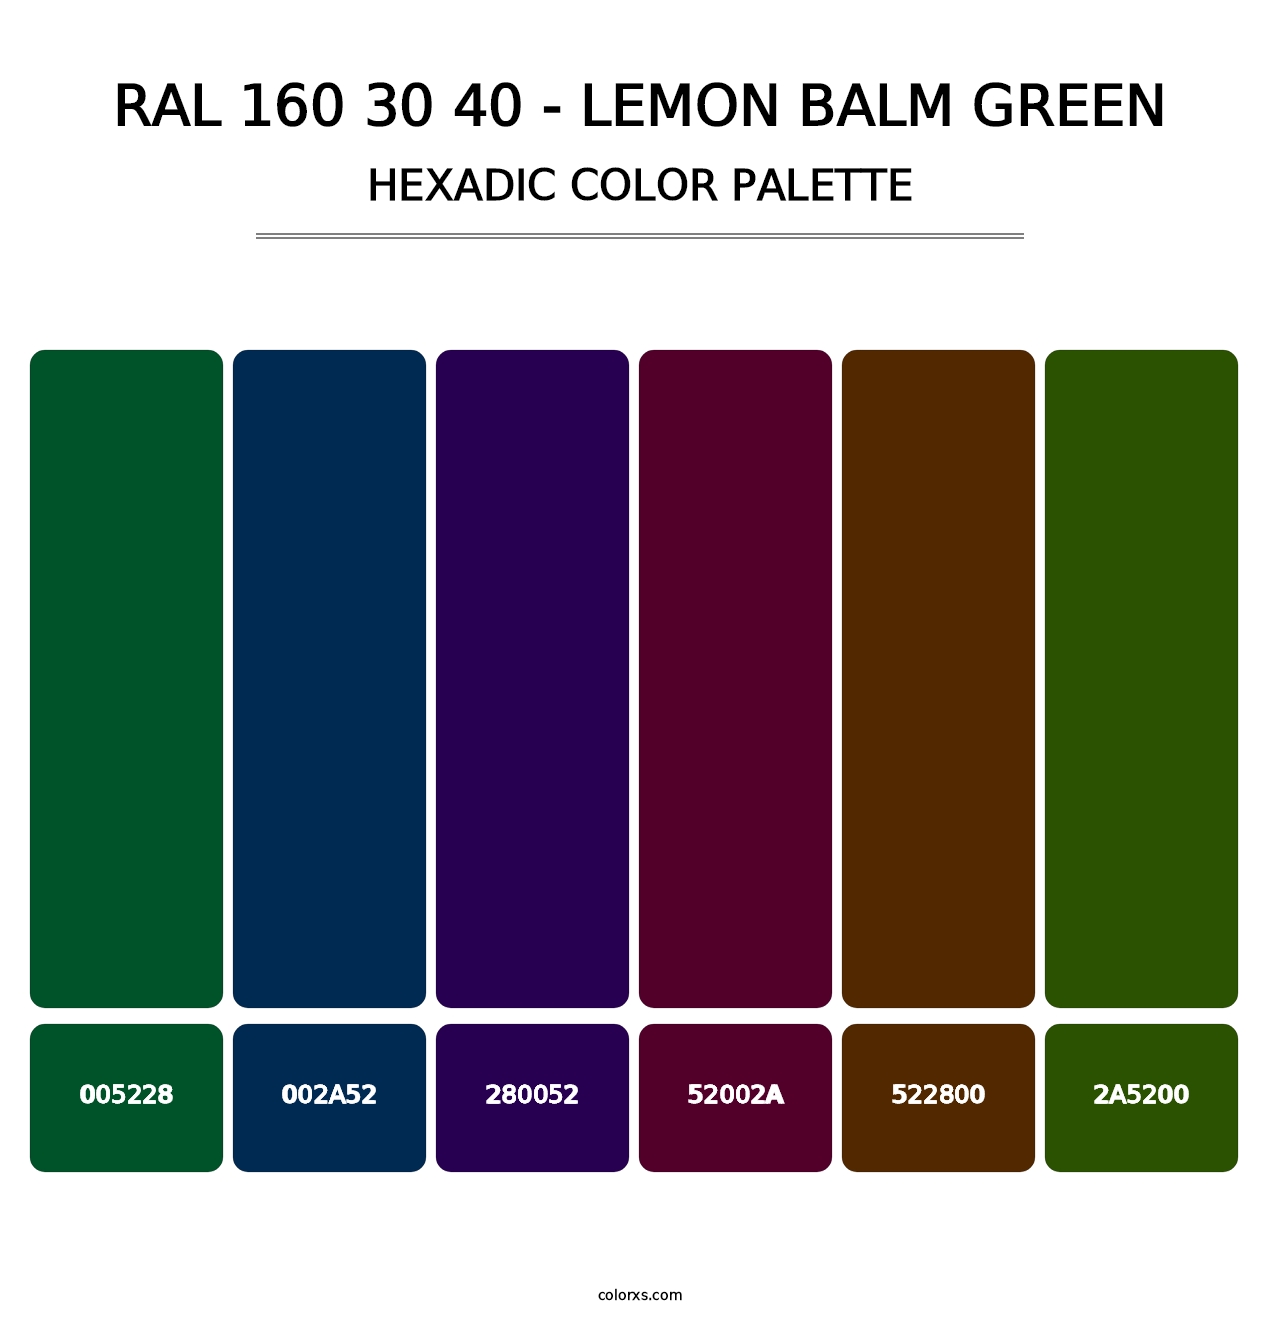 RAL 160 30 40 - Lemon Balm Green - Hexadic Color Palette